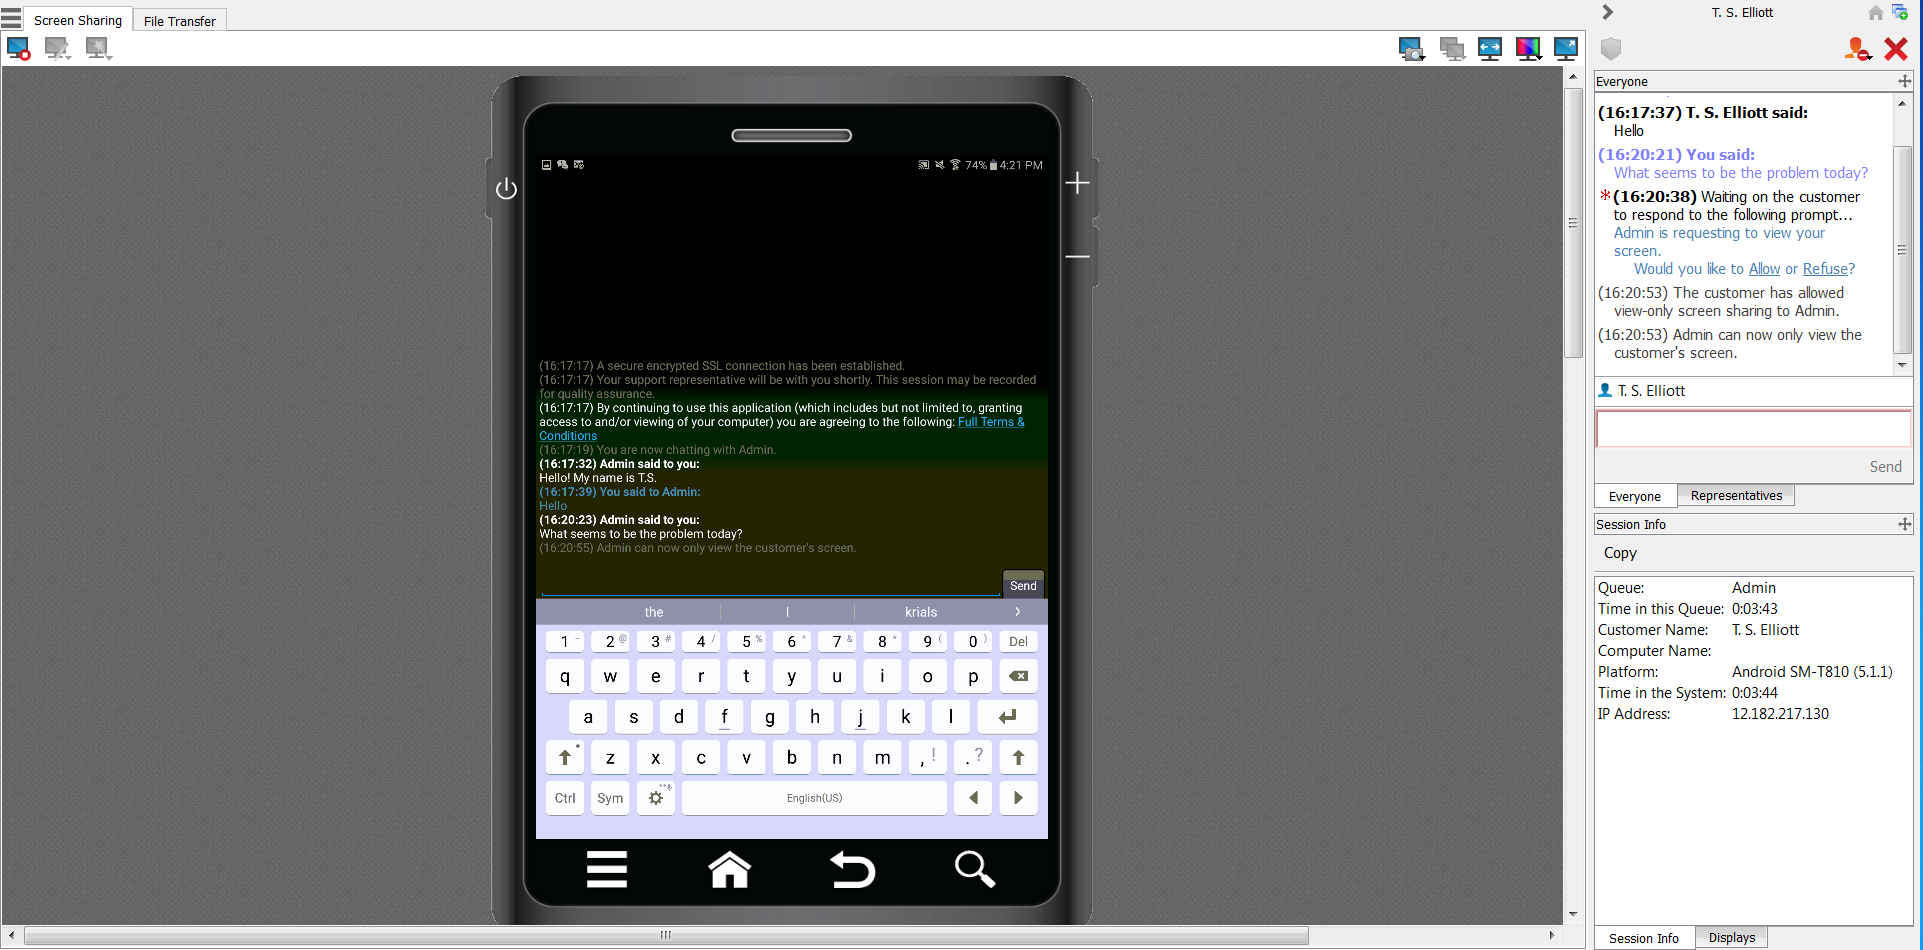 Chattare con l utente Android durante una sessione di supporto tecnico Connect Durante una sessione di supporto tecnico, il cliente e il tecnico di supporto possono chattare.